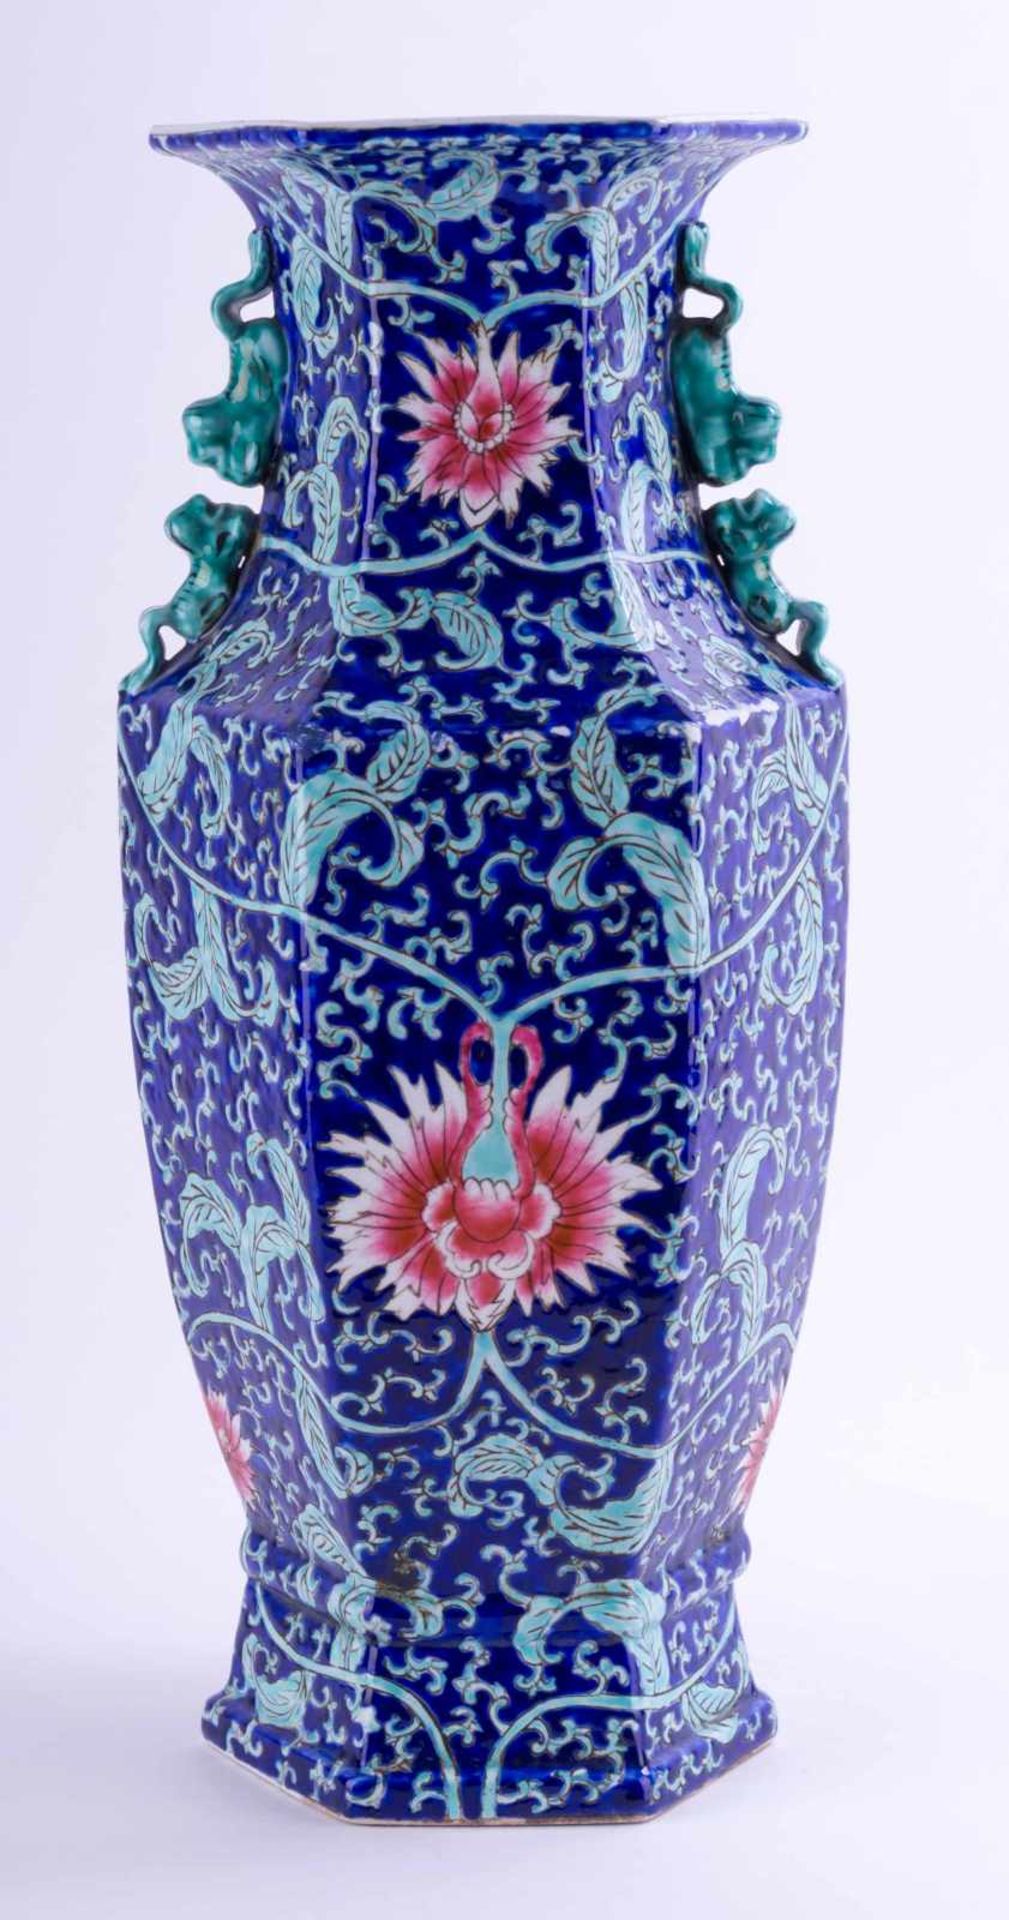 Vase China 19./20. Jhd. / Vase, China 19th/20th century verziert mit Blüten- und Rankendekor,